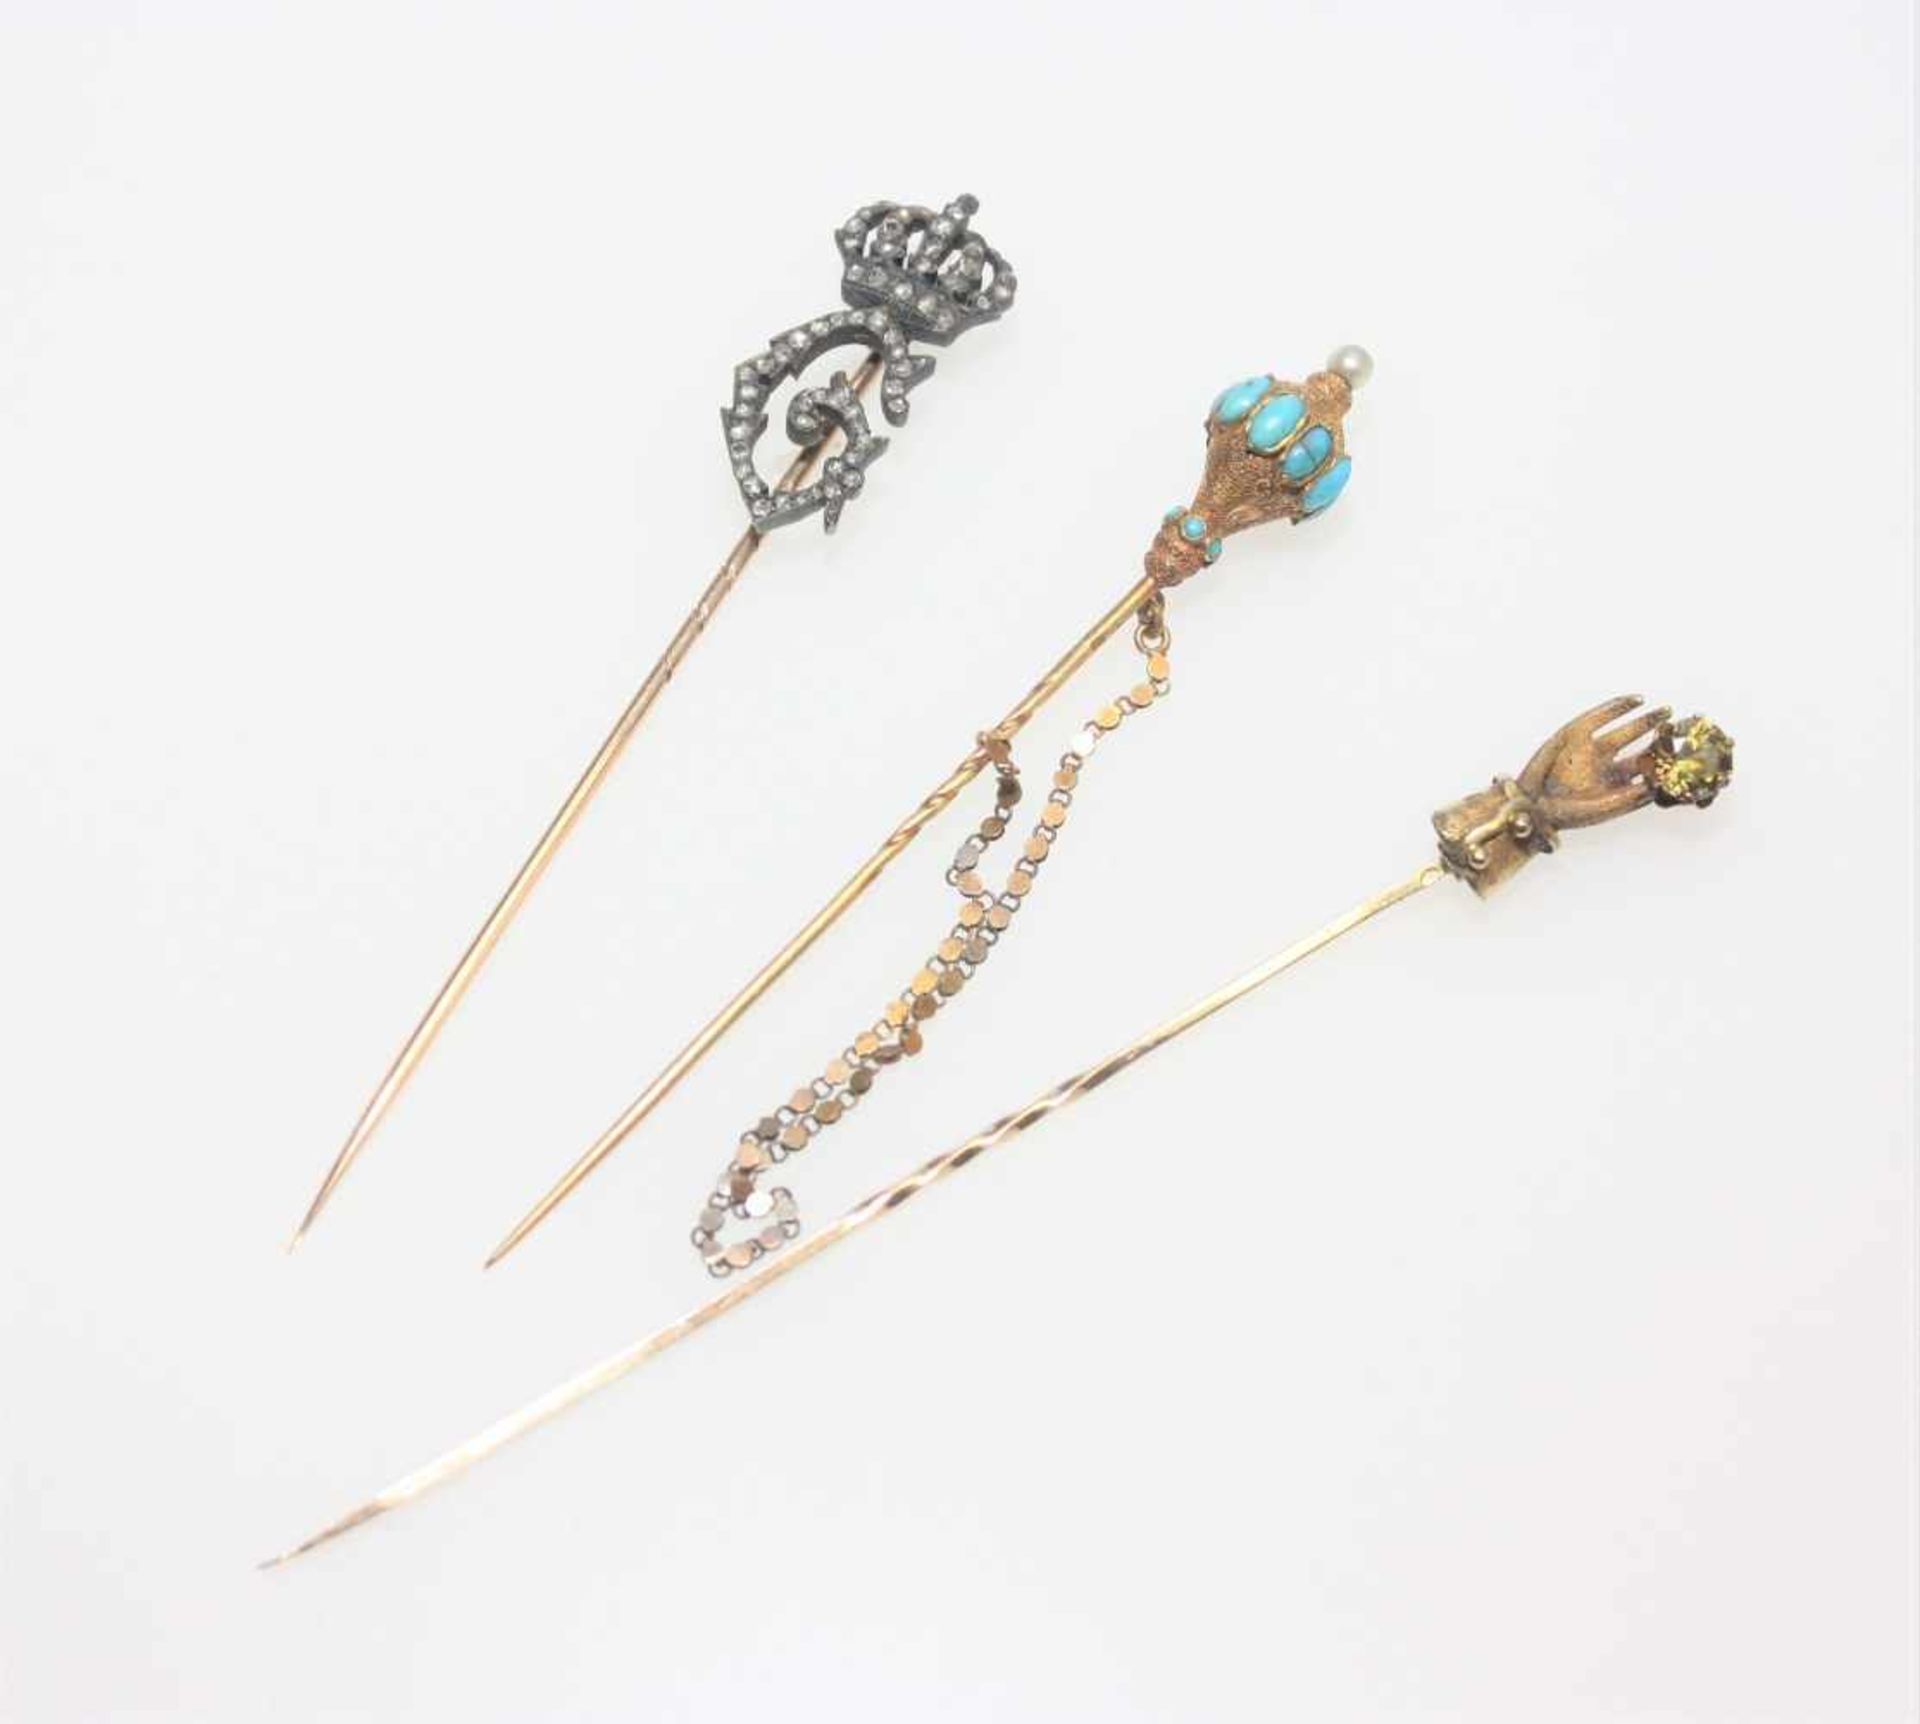 Drei ältere, goldene Krawattennadeln:Eine Nadel mit einem Perlchen und kleinen Türkisen (einer